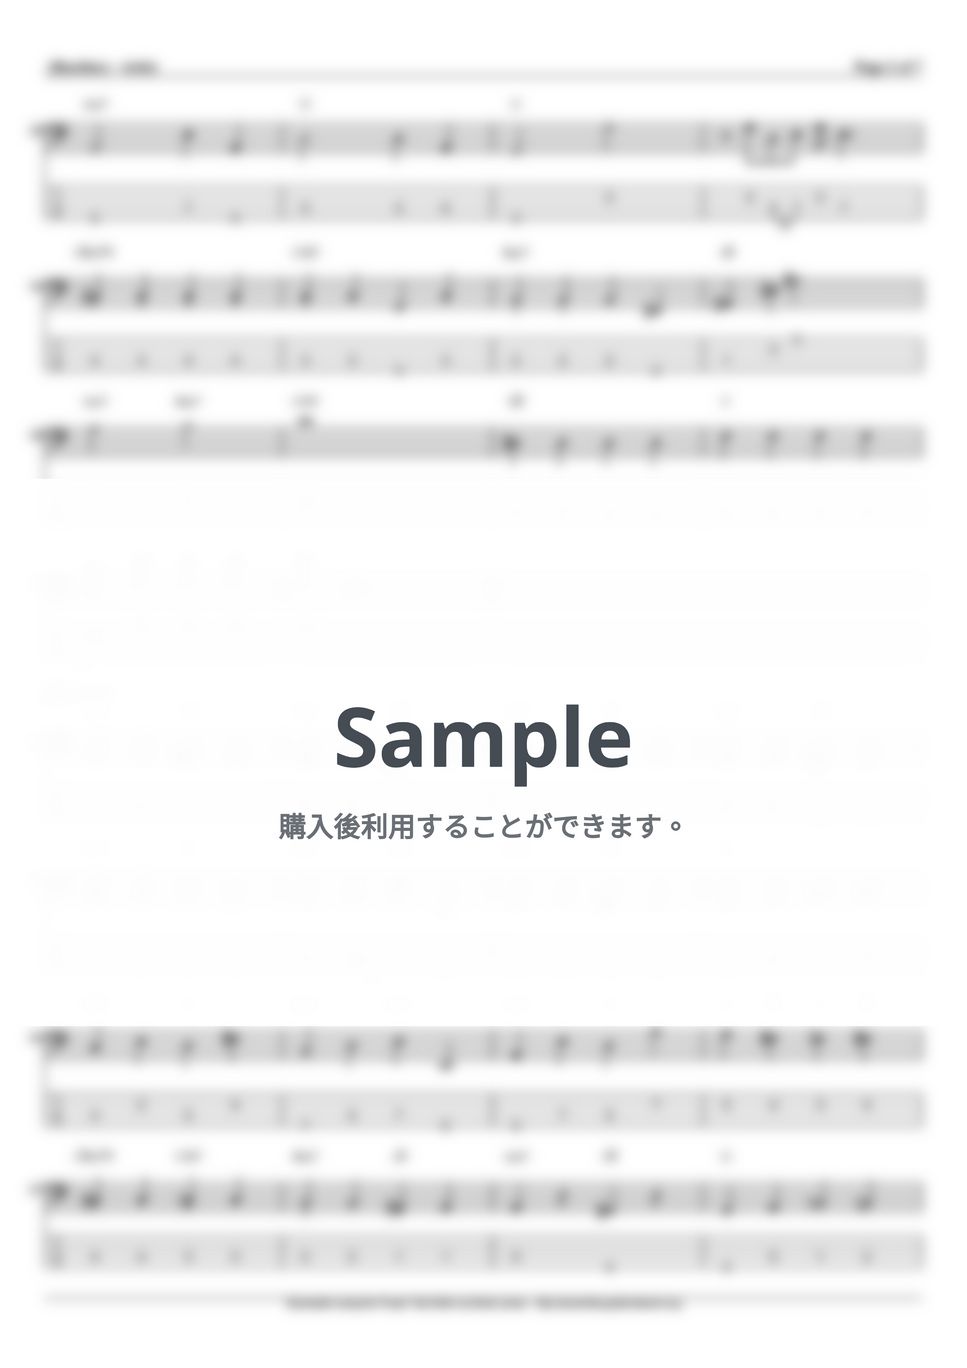 aiko - 予告 (ベース Tab譜 4弦) by T's bass score